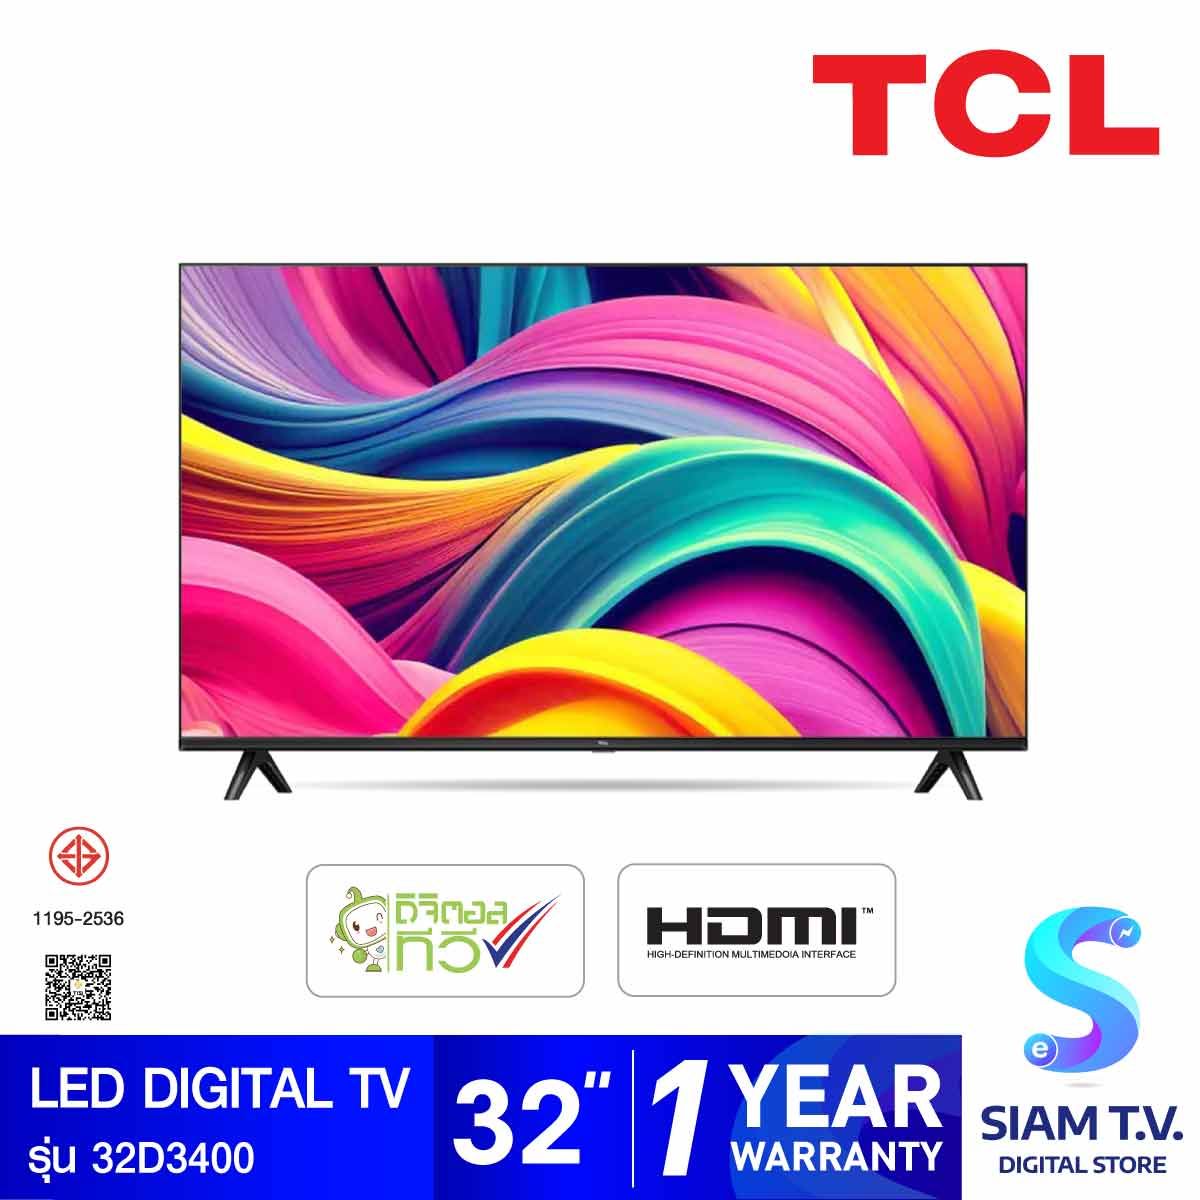 TCL DIGITAL TV LED รุ่น 32D3400 ดิจิตอลทีวี ขนาด 32 นิ้ว